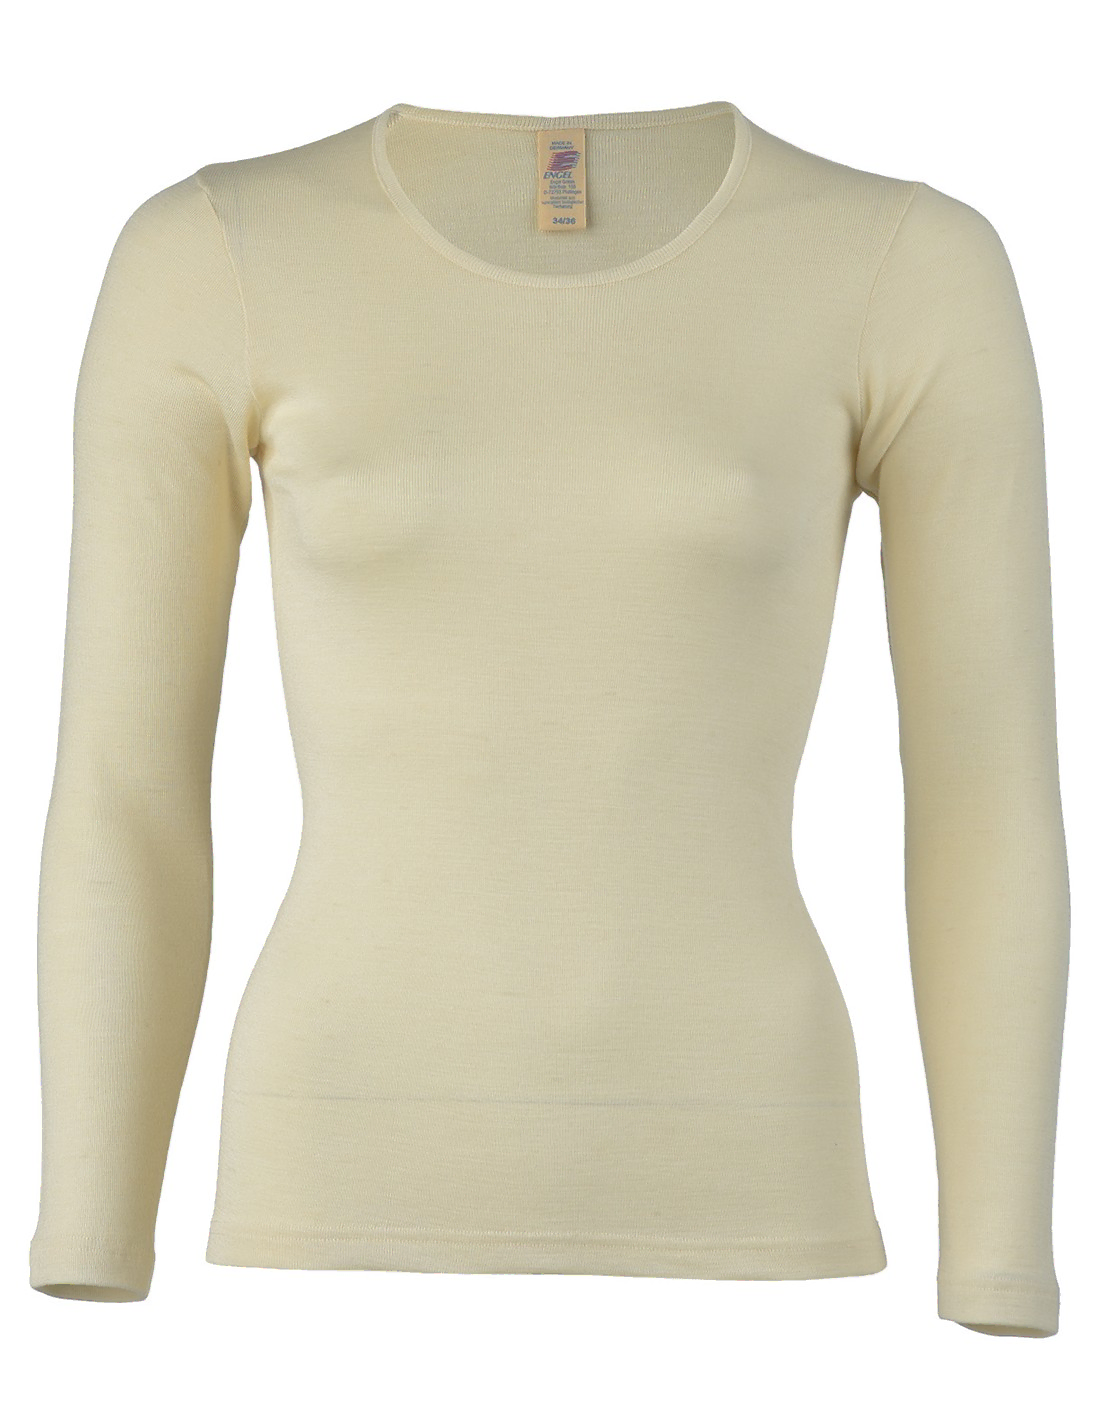 Image of Dames Shirt Lange Mouw Zijde Wol Engel Natur, Kleur Gebroken wit, Maat 38/40 - Medium